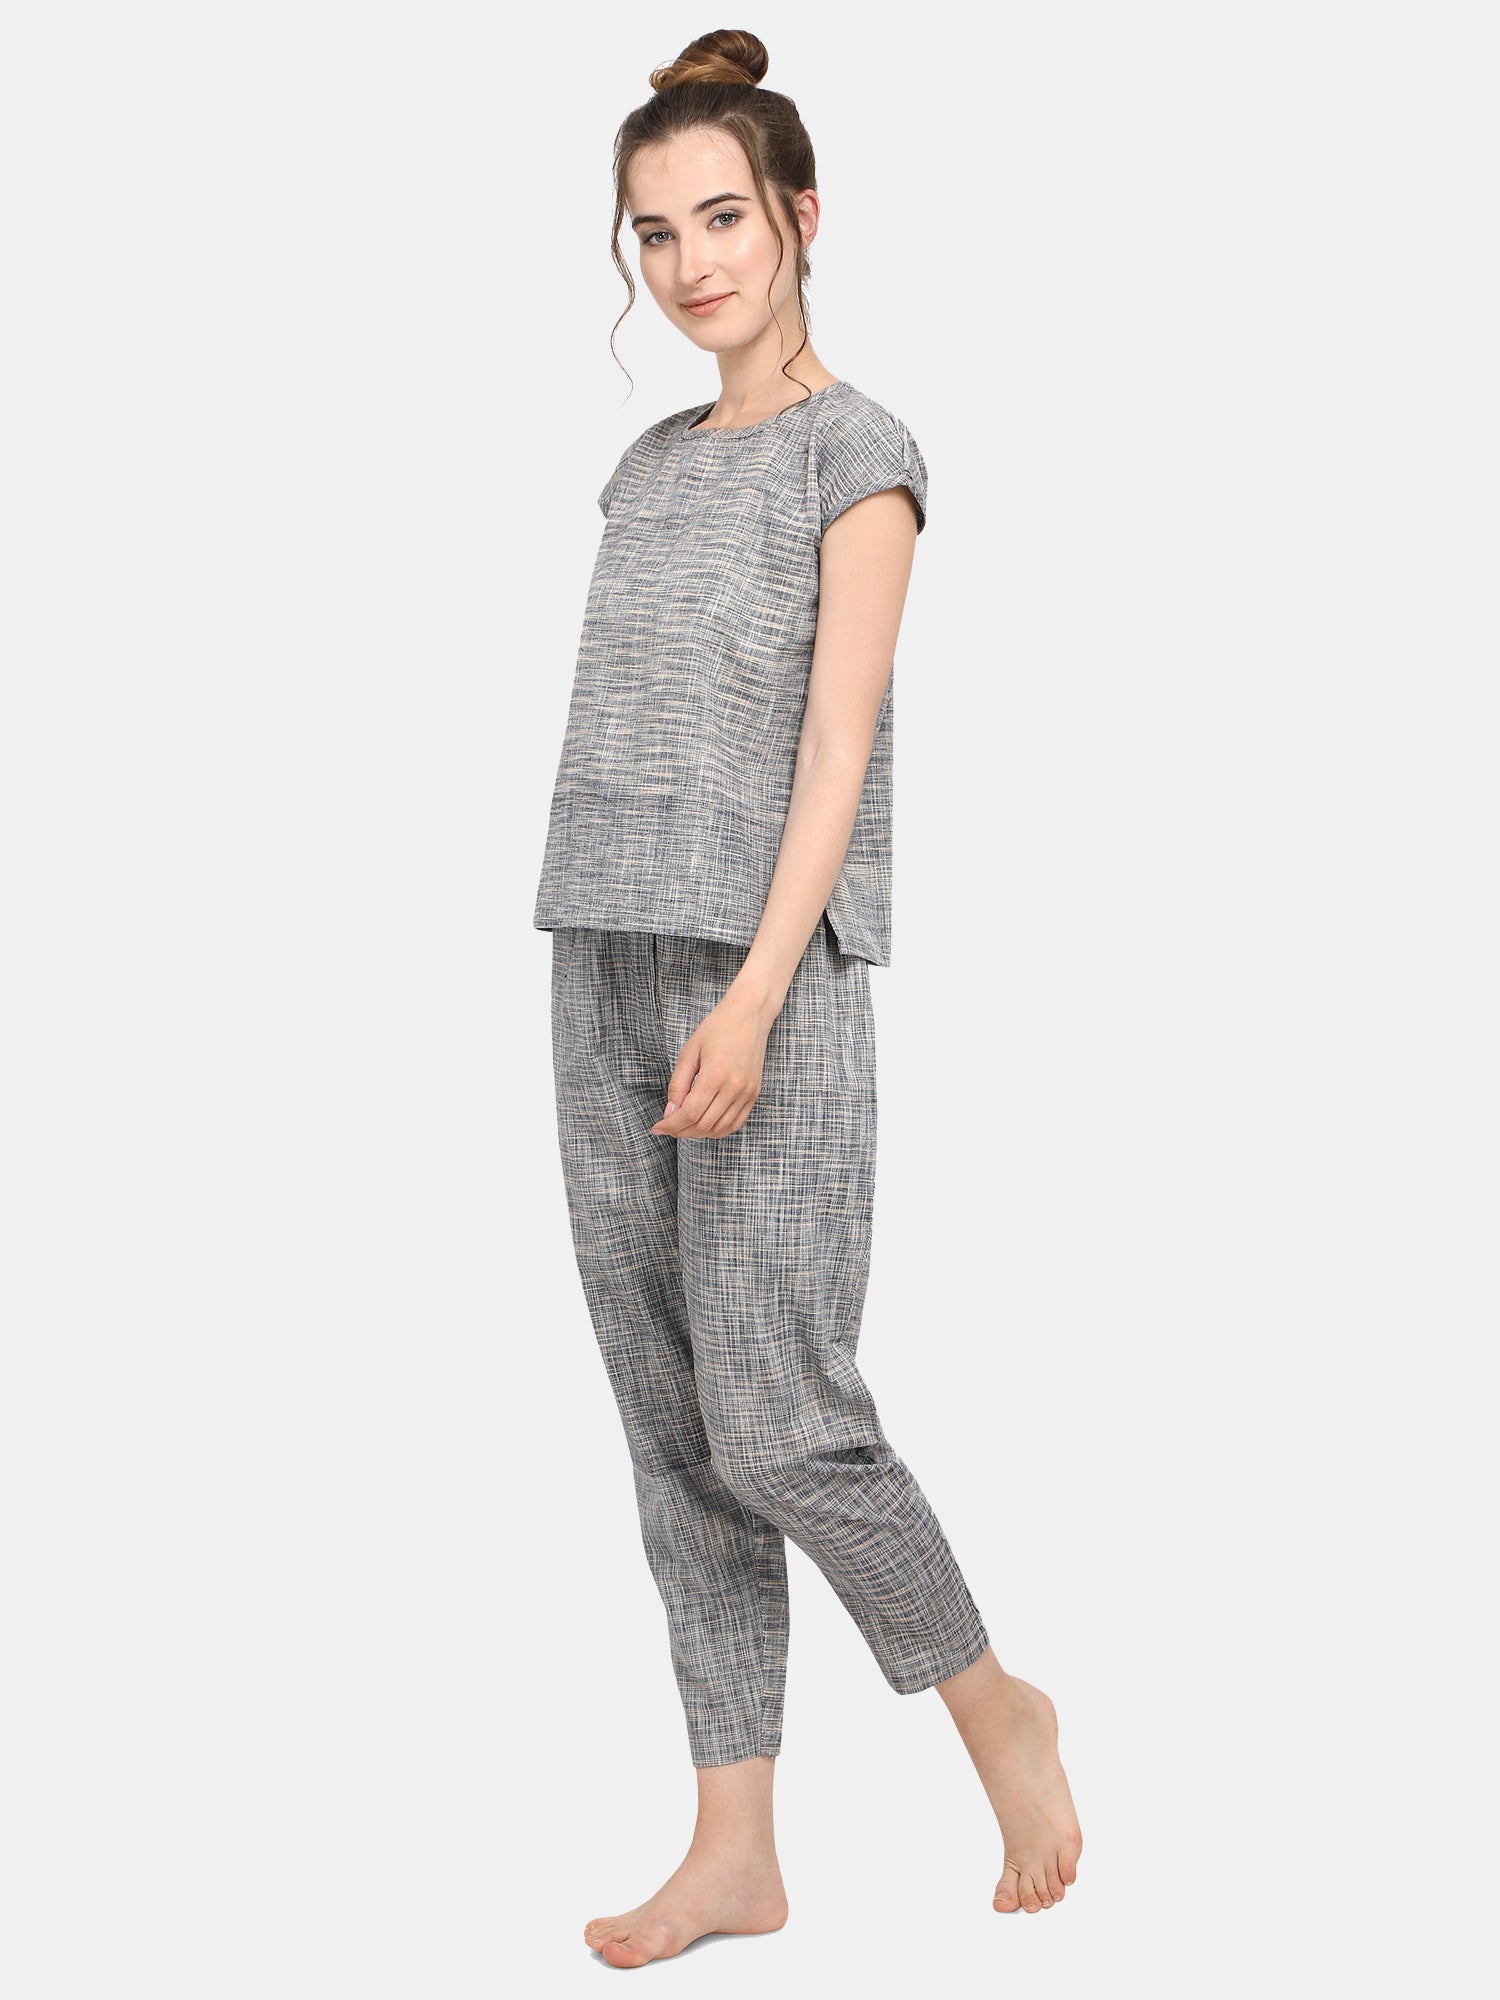 Women's Grey Slub cotton short night suit set  - MESMORA FASHIONS